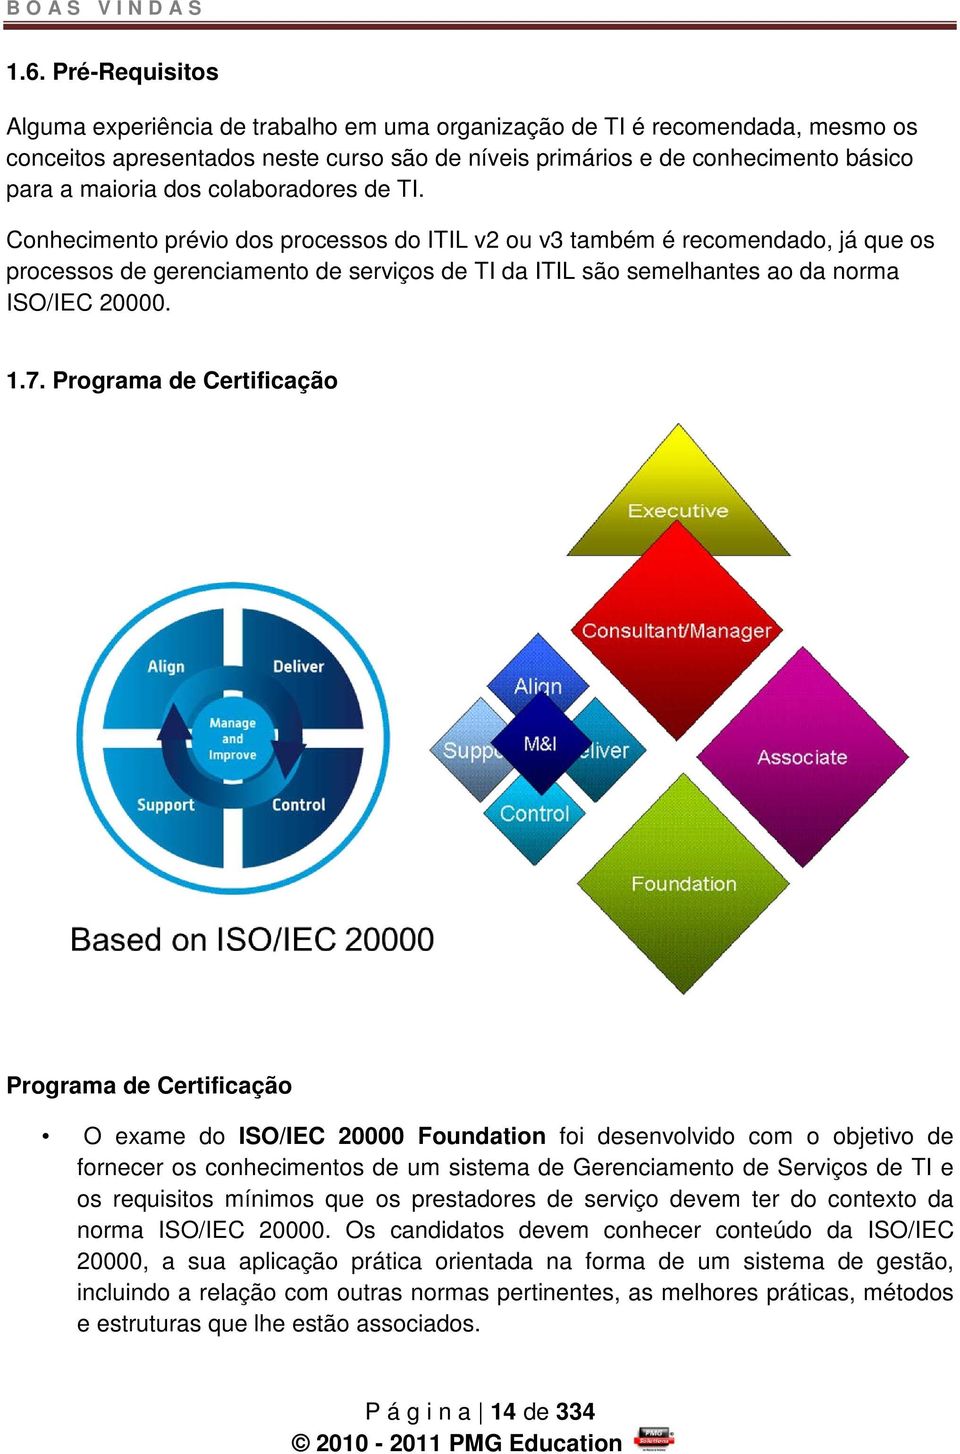 colaboradores de TI. Conhecimento prévio dos processos do ITIL v2 ou v3 também é recomendado, já que os processos de gerenciamento de serviços de TI da ITIL são semelhantes ao da norma ISO/IEC 20000.